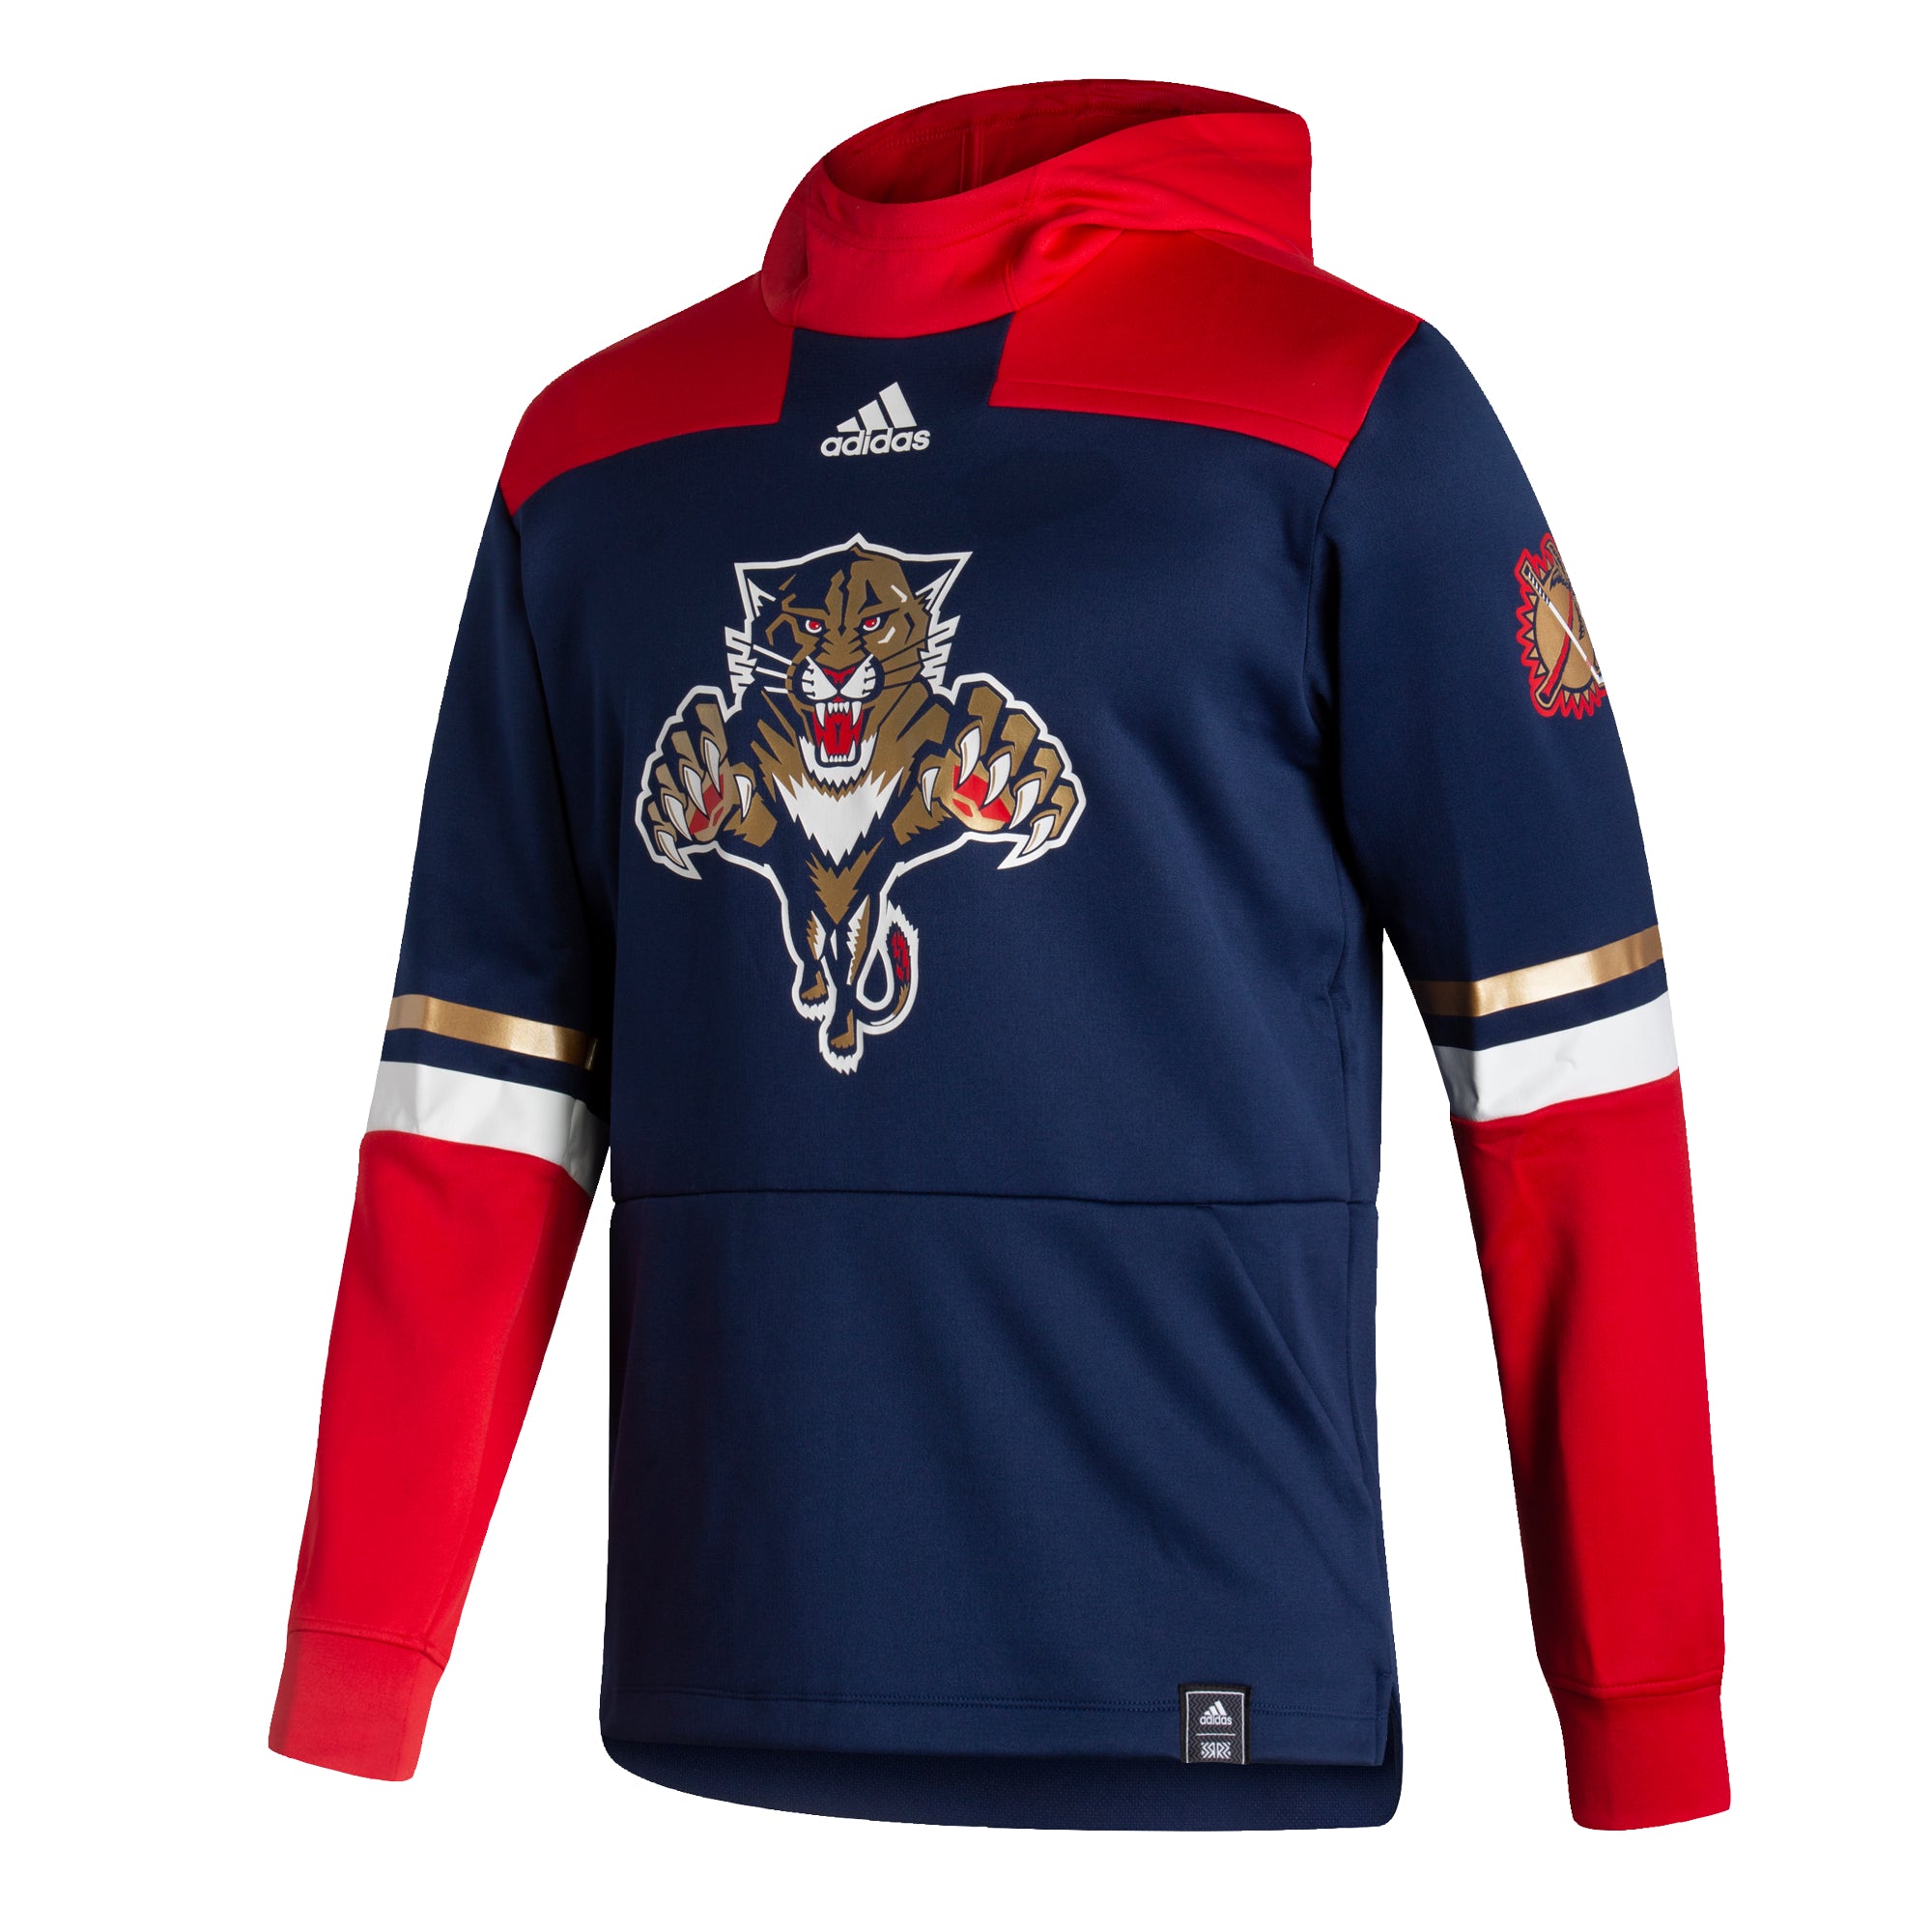 Reebok, Shirts, Florida Panthers Reebok Old Logo Jersey